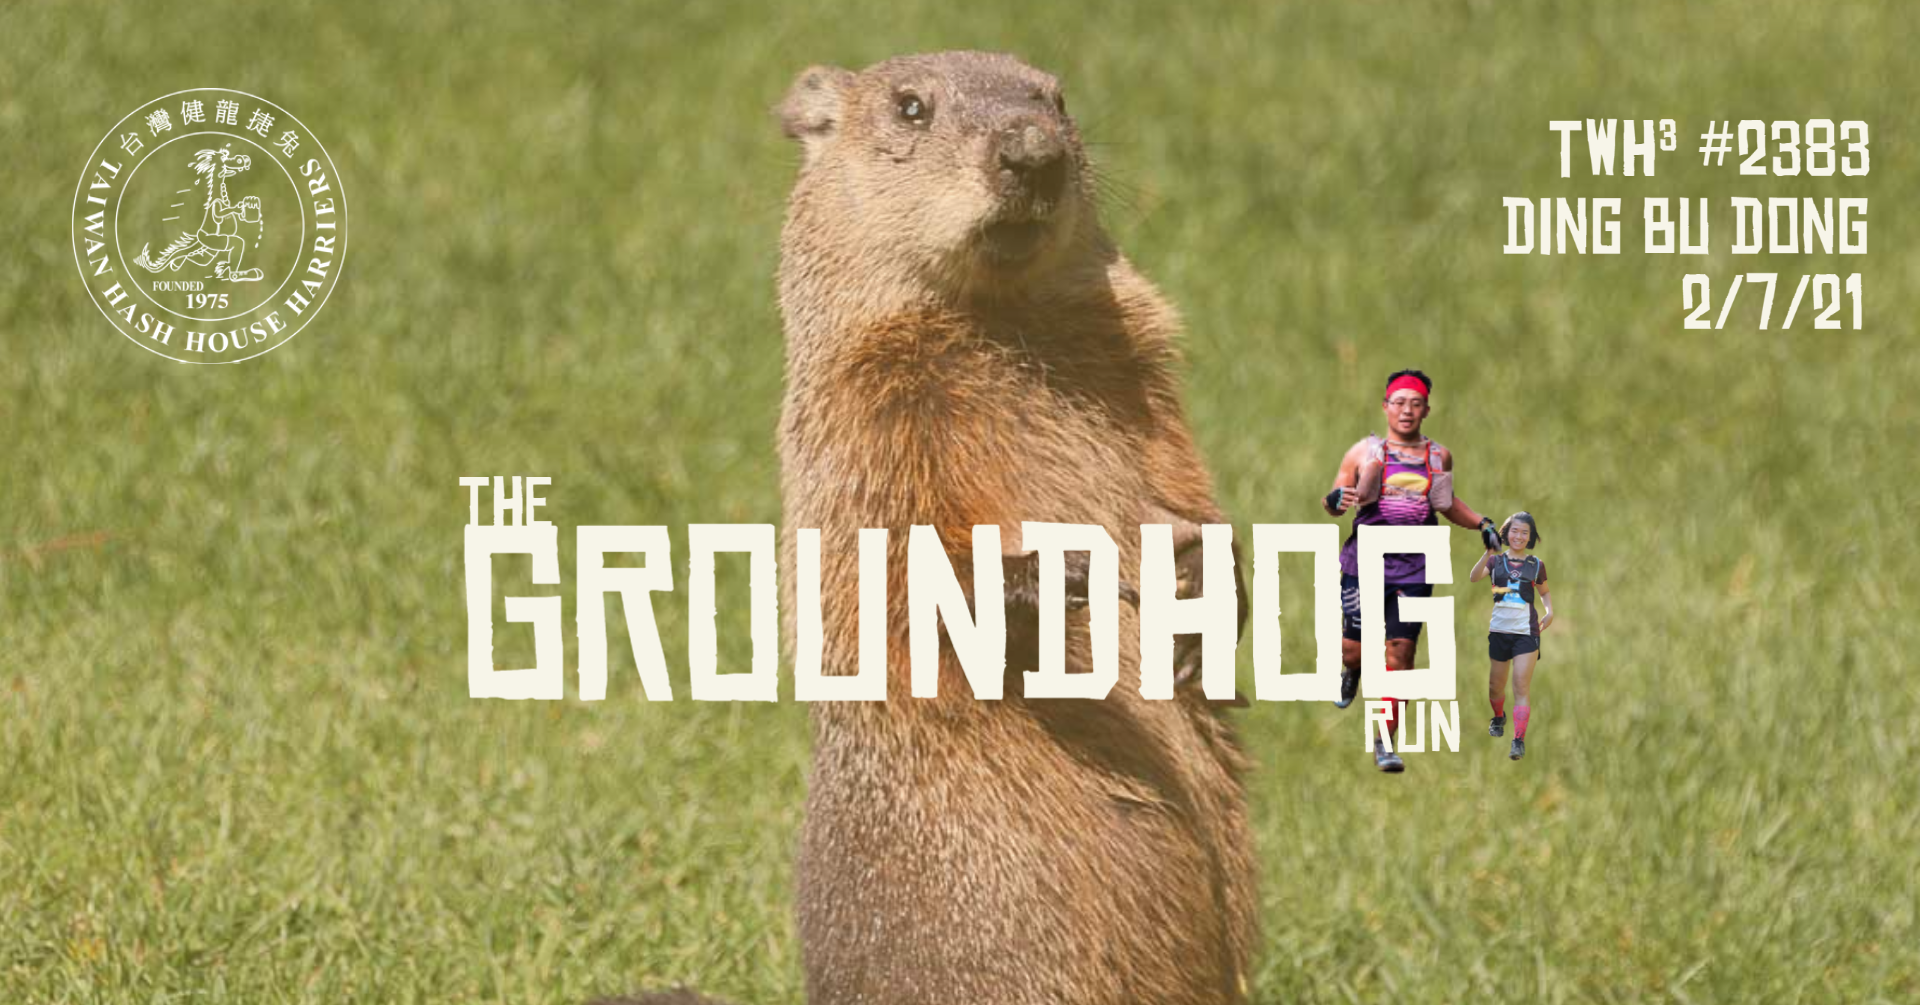 #2383 - The Groundhog Run